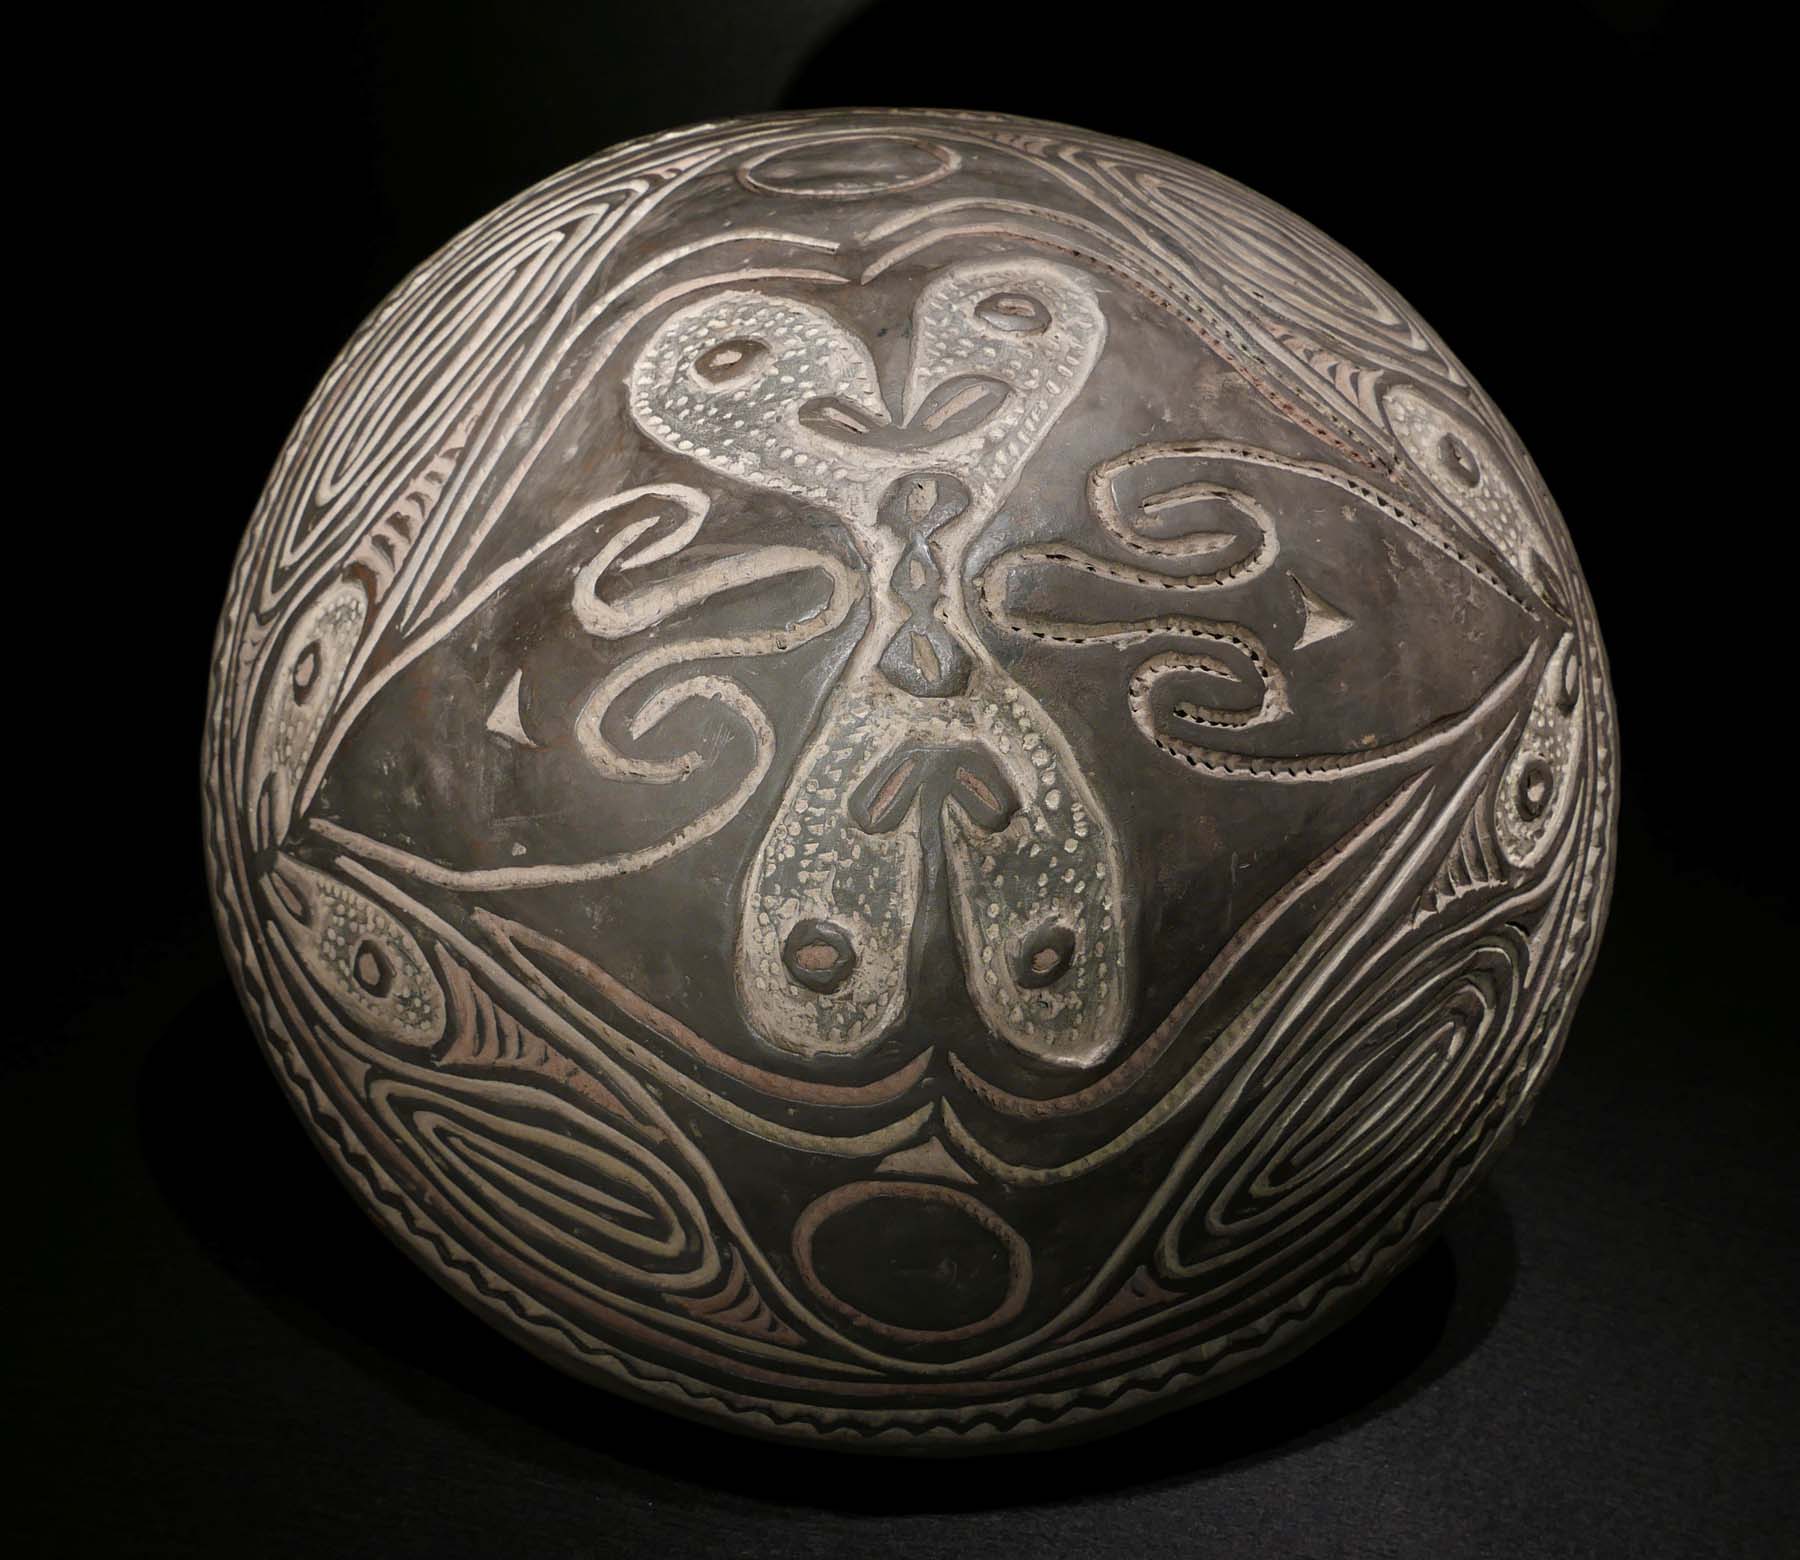 Tiefe Speiseschale, Terrakotta, Farbpigmente. Koiwut / Sepik / Papua-Neuguinea. D 38 cm. 950.- €